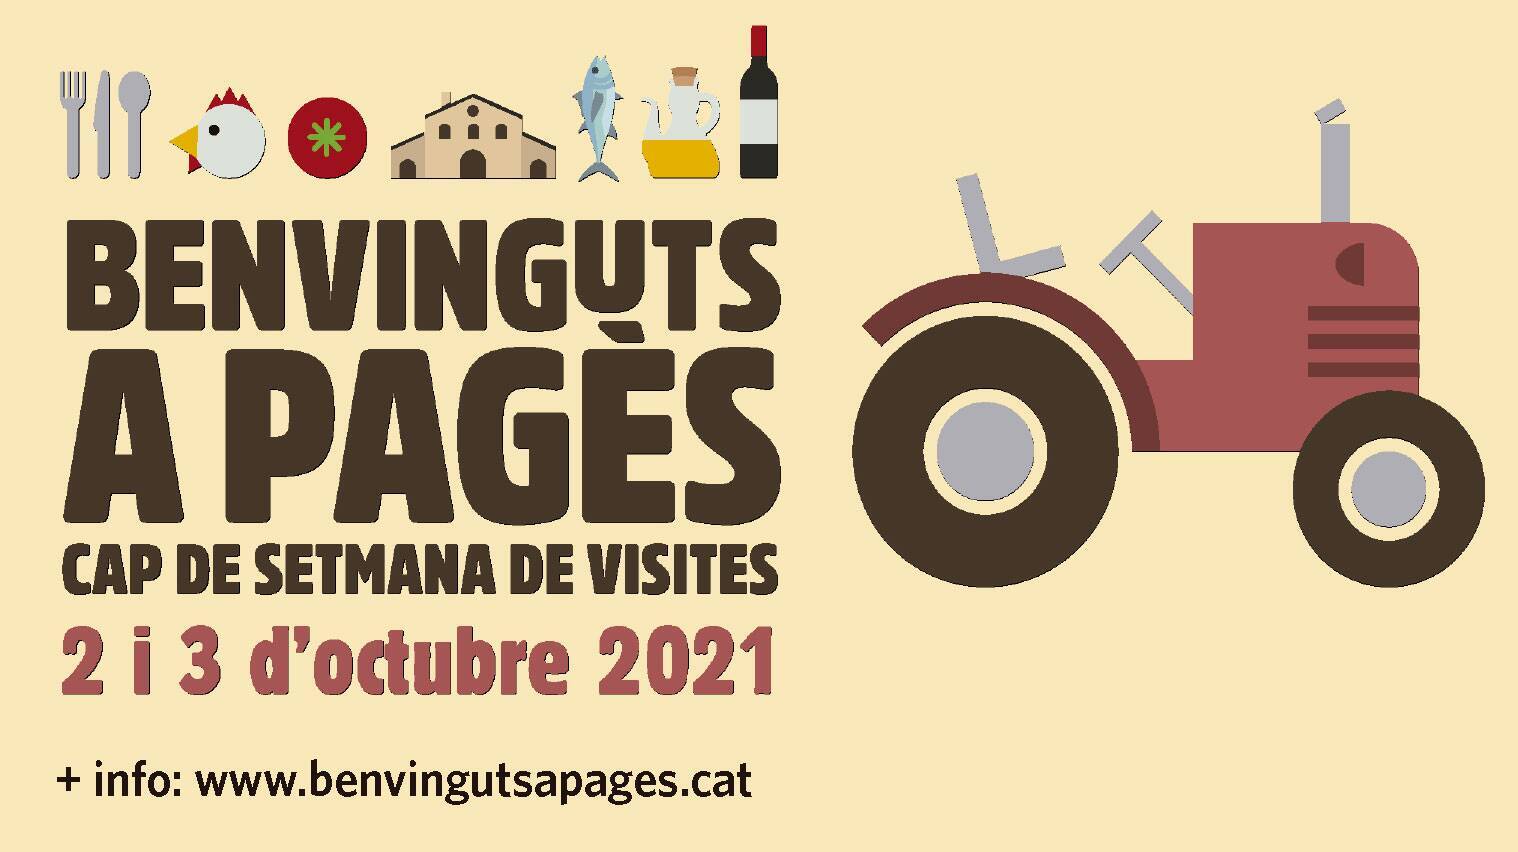 El cap de setmana del 2 i 3 d’octubre torna la festa de la pagesia catalana: Benvinguts a pagès!